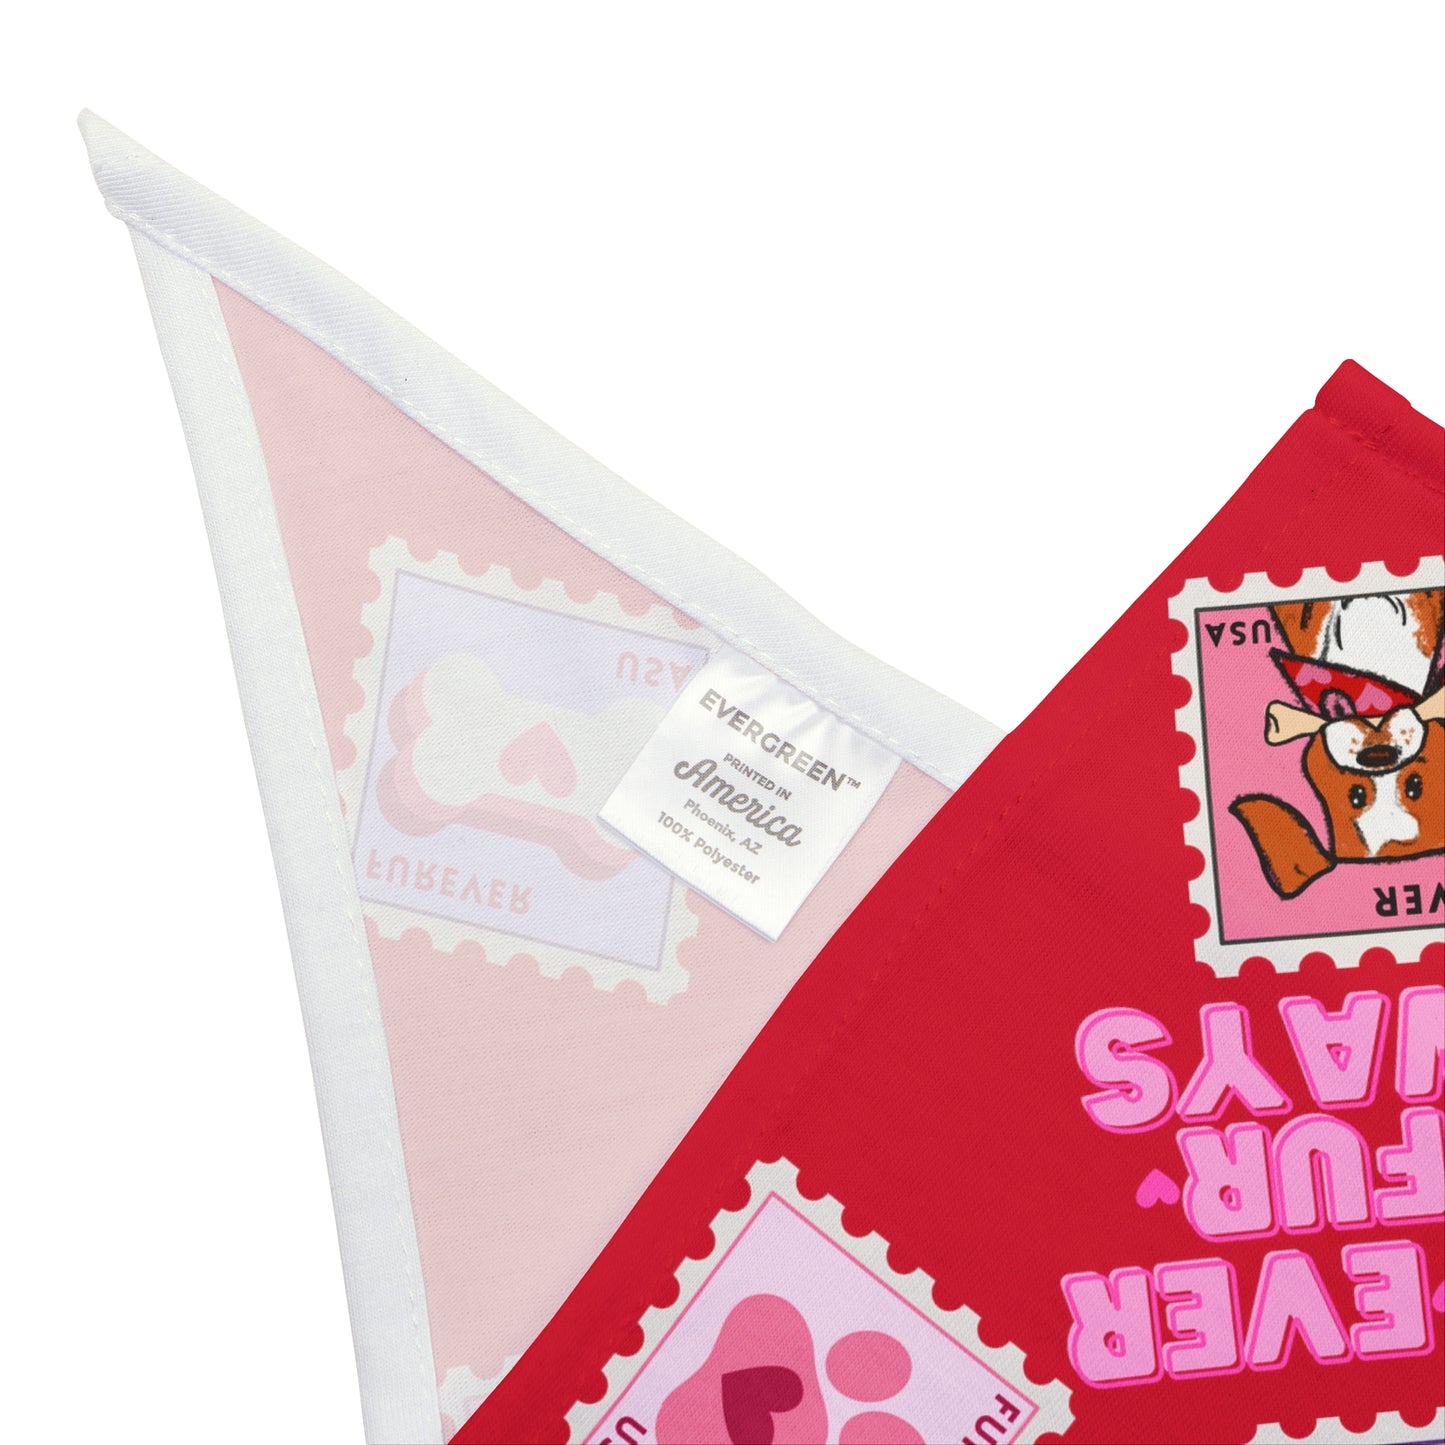 Valentine's Day Dog Bandana / Two Sizes Available / Pet Bandana / Always & Furever / Dog Valentine Stamp